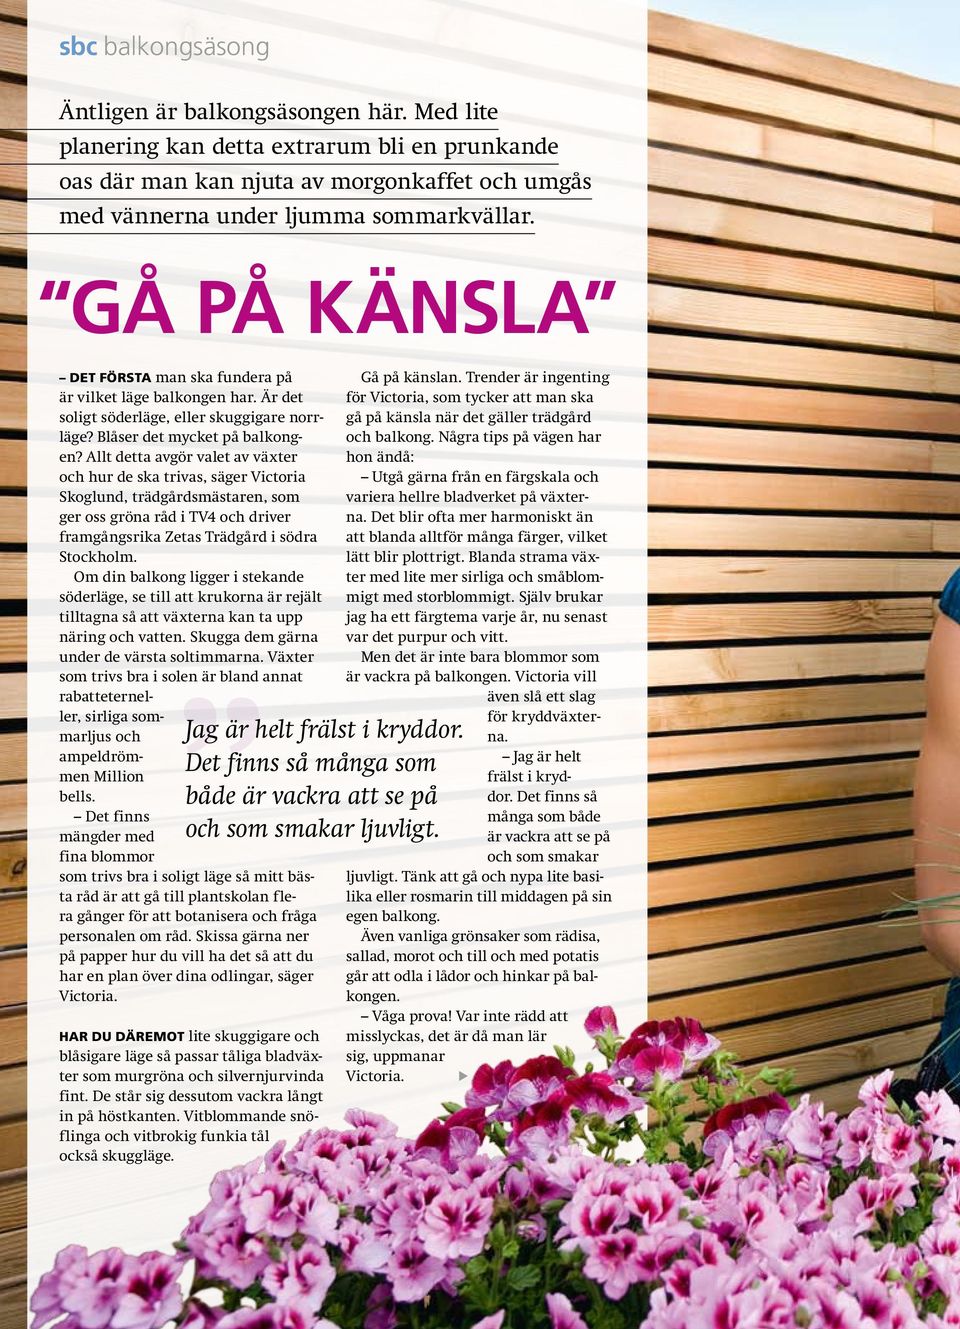 Allt detta avgör valet av växter och hur de ska trivas, säger Victoria Skoglund, trädgårdsmästaren, som ger oss gröna råd i TV4 och driver framgångsrika Zetas Trädgård i södra Stockholm.